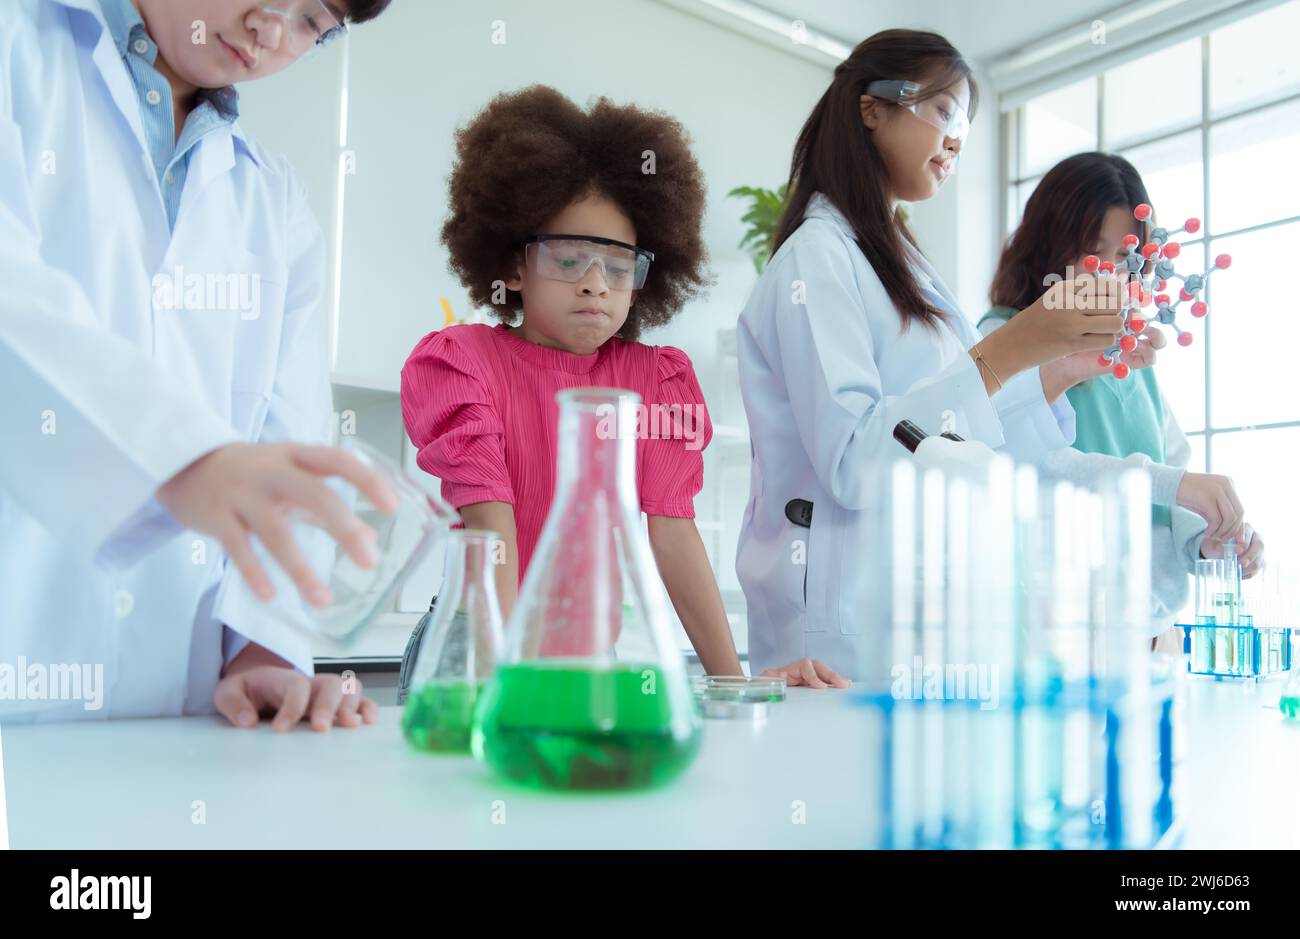 Dans la classe de sciences, un enfant scientifique asiatique expérimentant avec des formules scientifiques avec des produits chimiques Banque D'Images